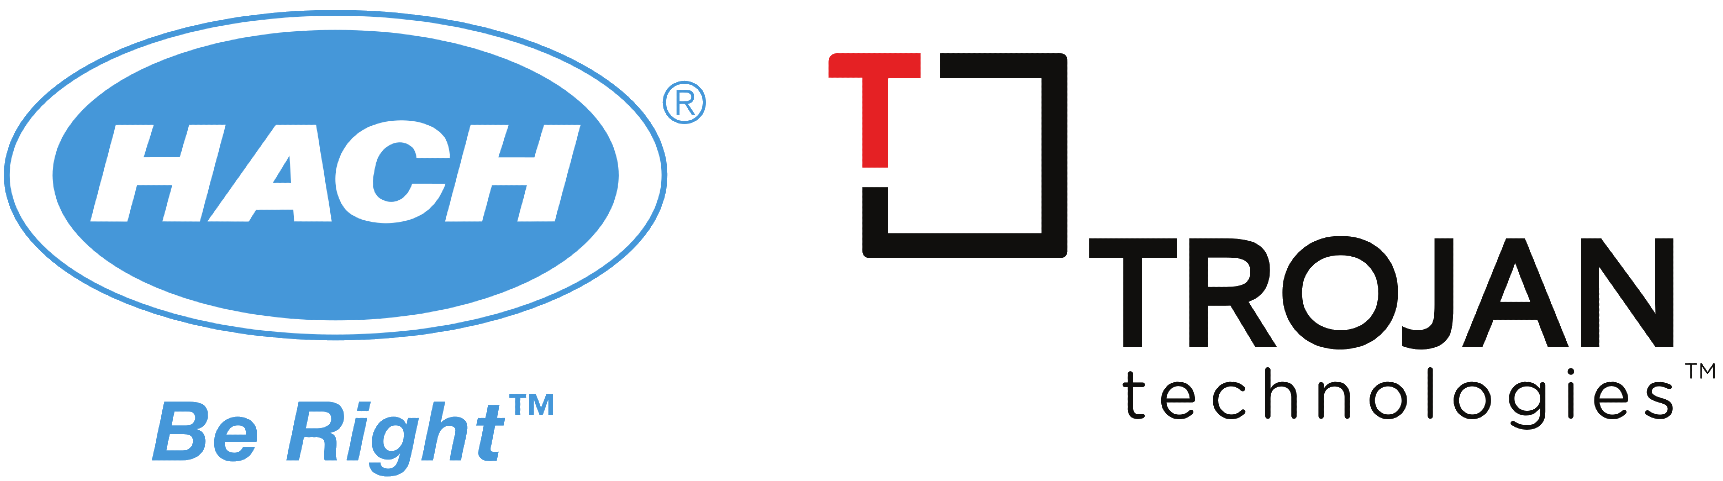 Hach-_-Trojan-Logo.png